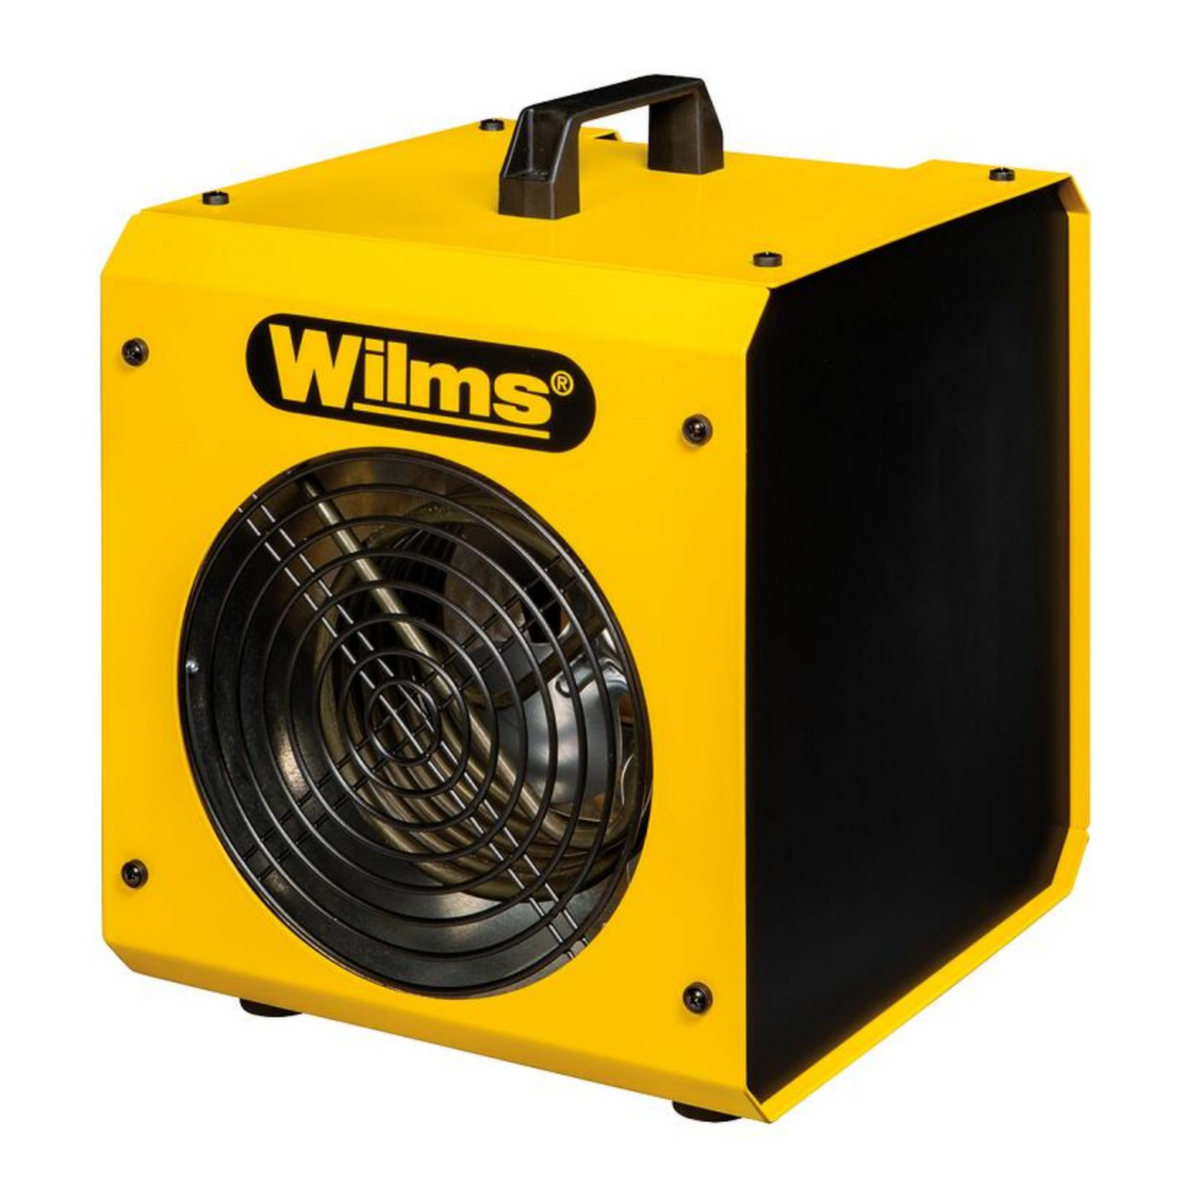 Wilms Elektroheizer Standard 1 ZOOM